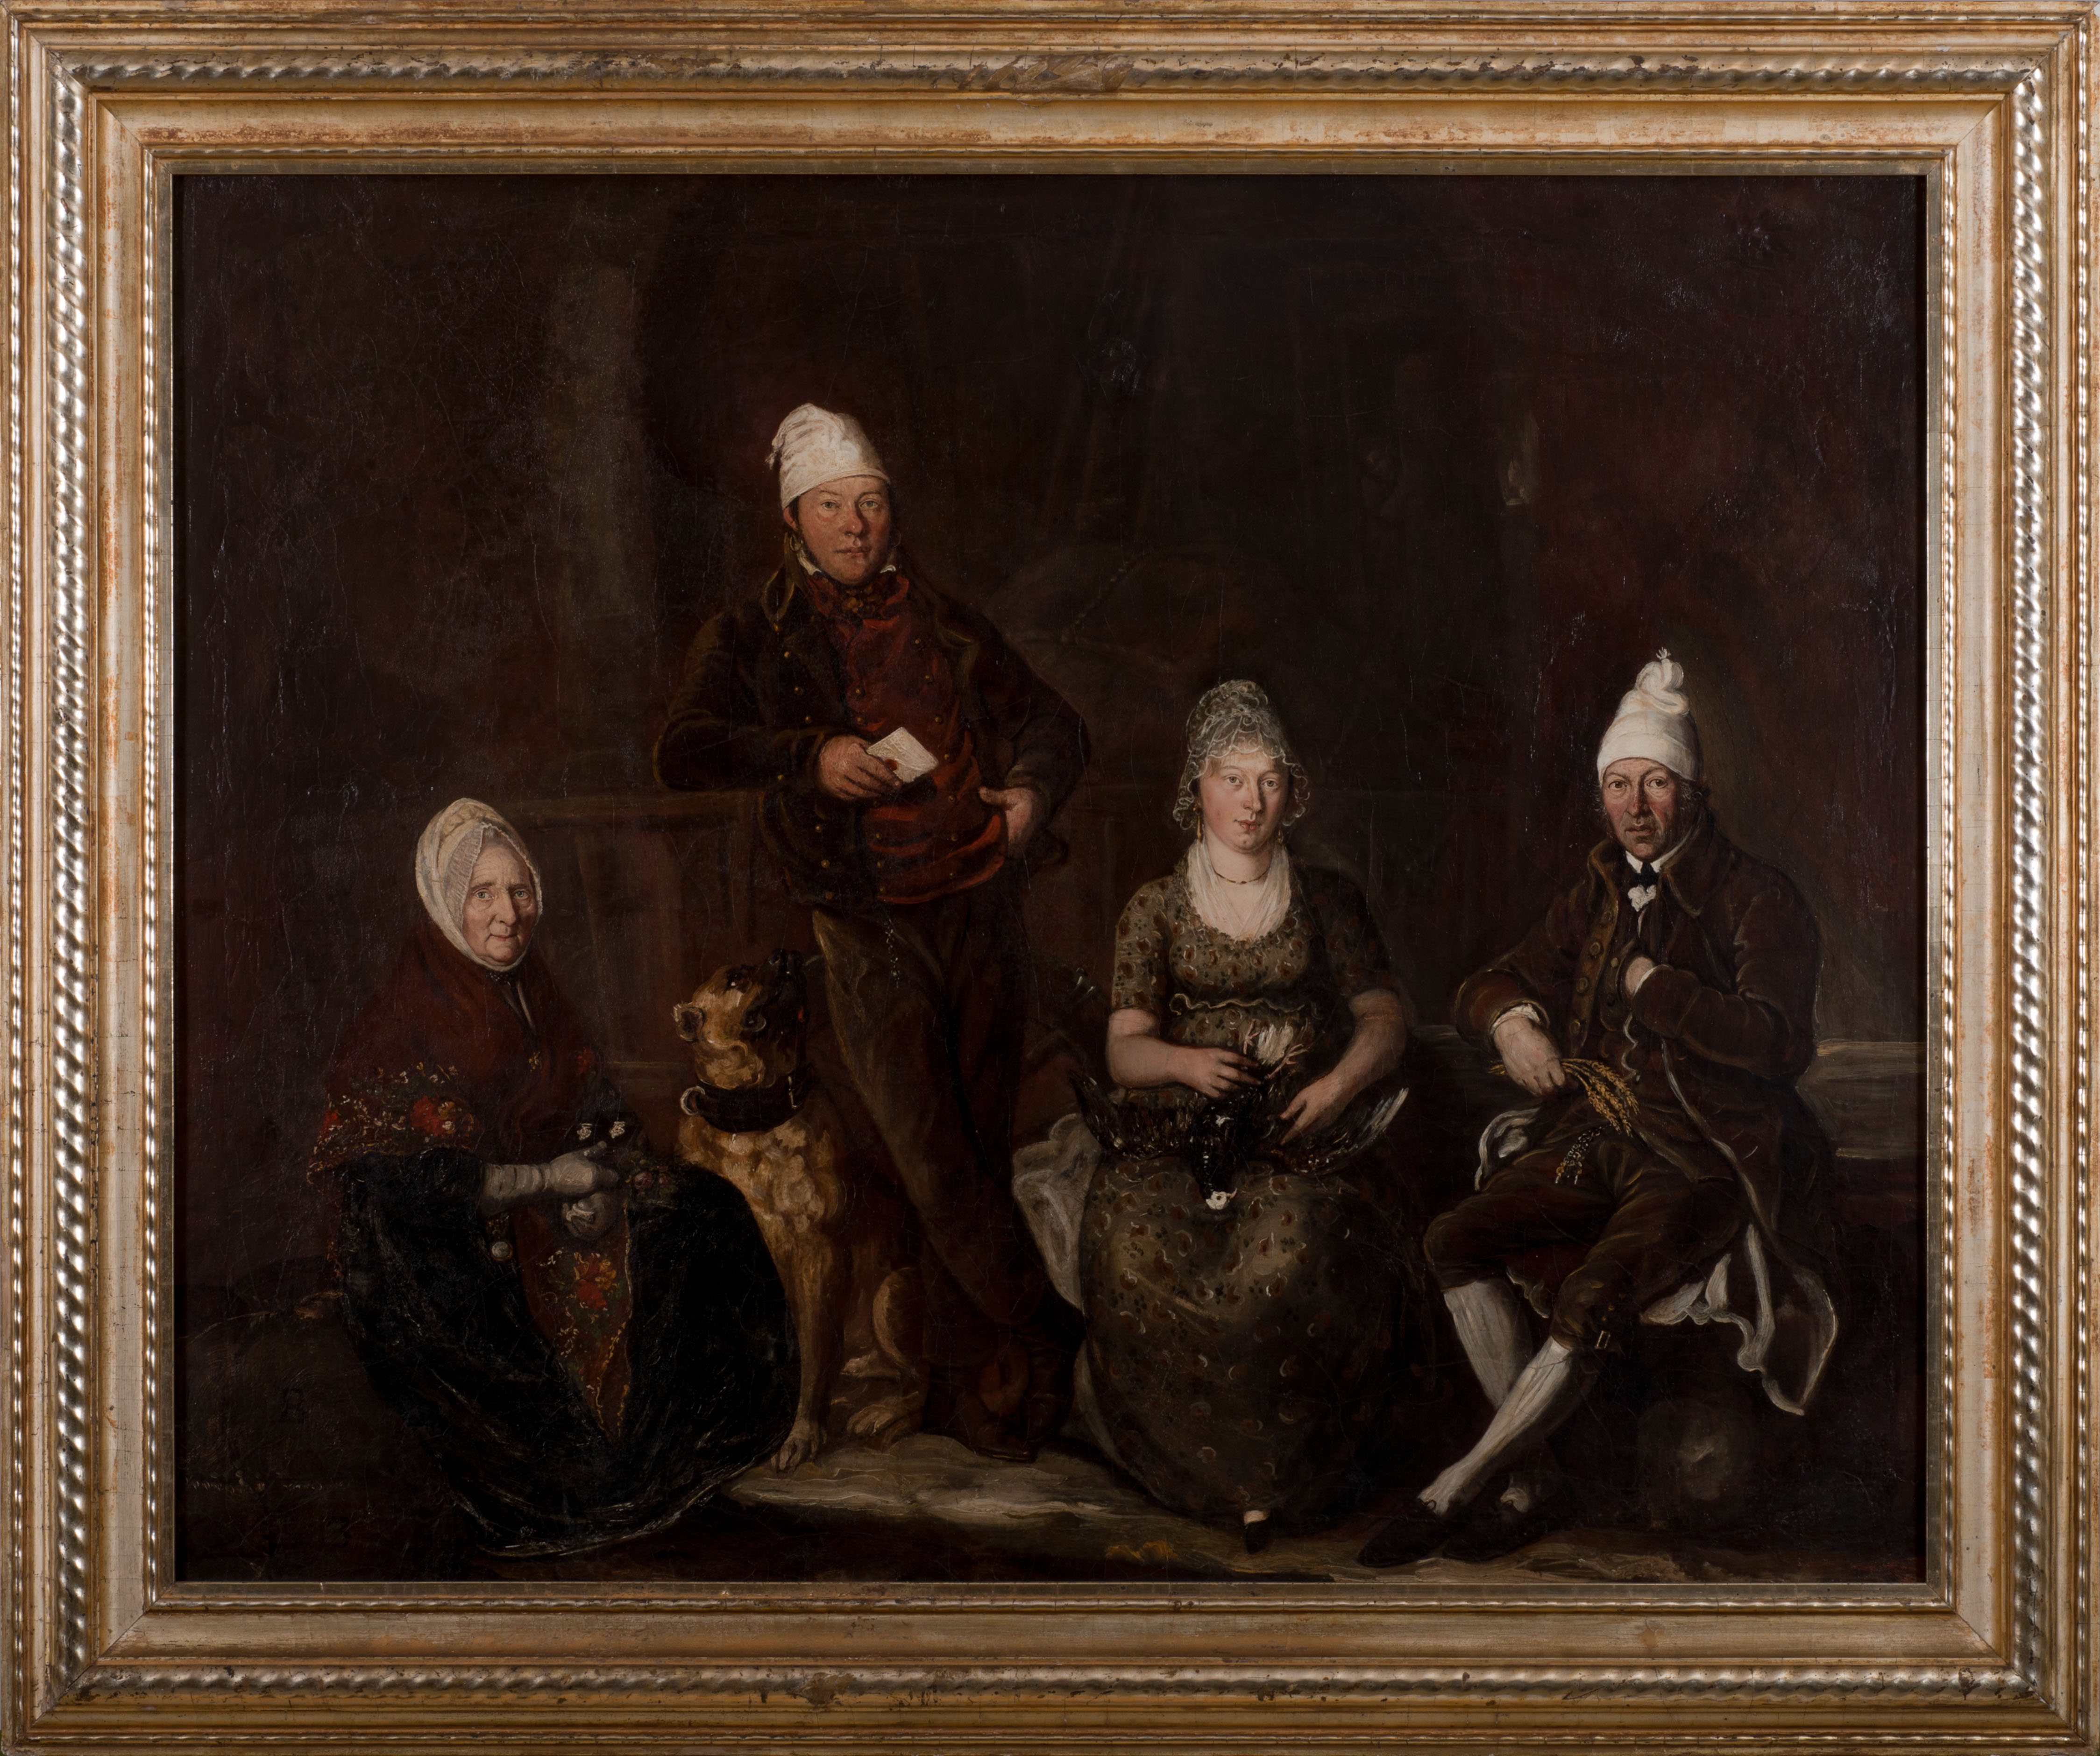 Dans un cadre doré, on peut voir un tableau peint en couleurs foncées avec quatre personnes différentes et un chien. Tous portent un couvre-chef blanc à l'ancienne et un seul d'entre eux se tient debout, les autres s'assoient. 